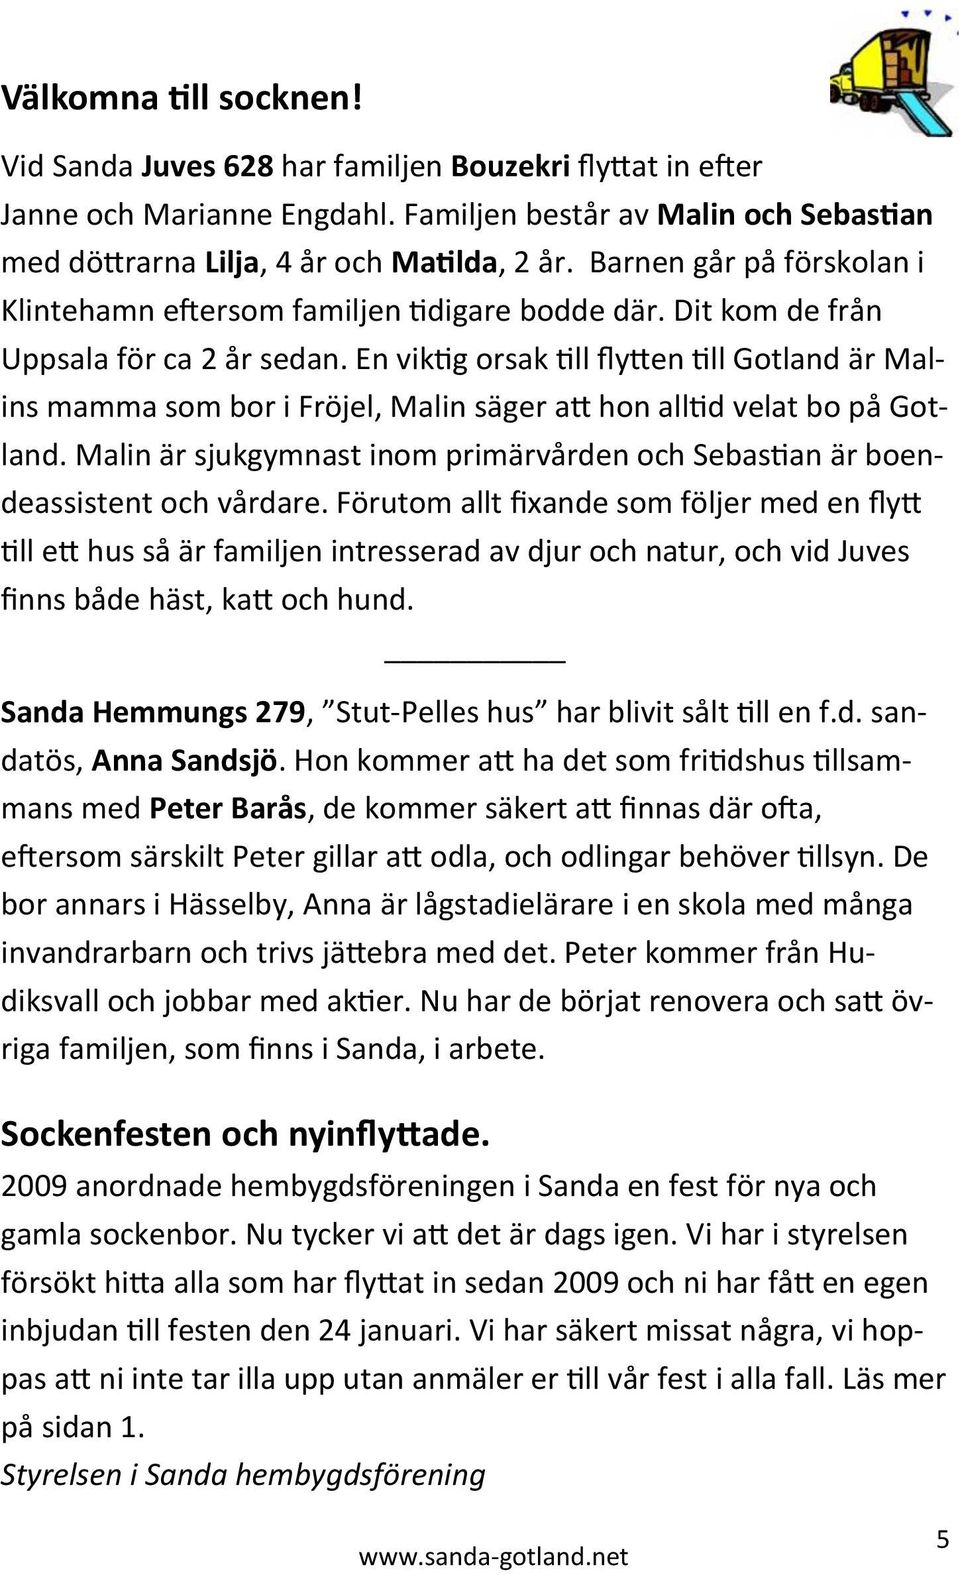 En viktig orsak till flytten till Gotland är Malins mamma som bor i Fröjel, Malin säger att hon alltid velat bo på Gotland.